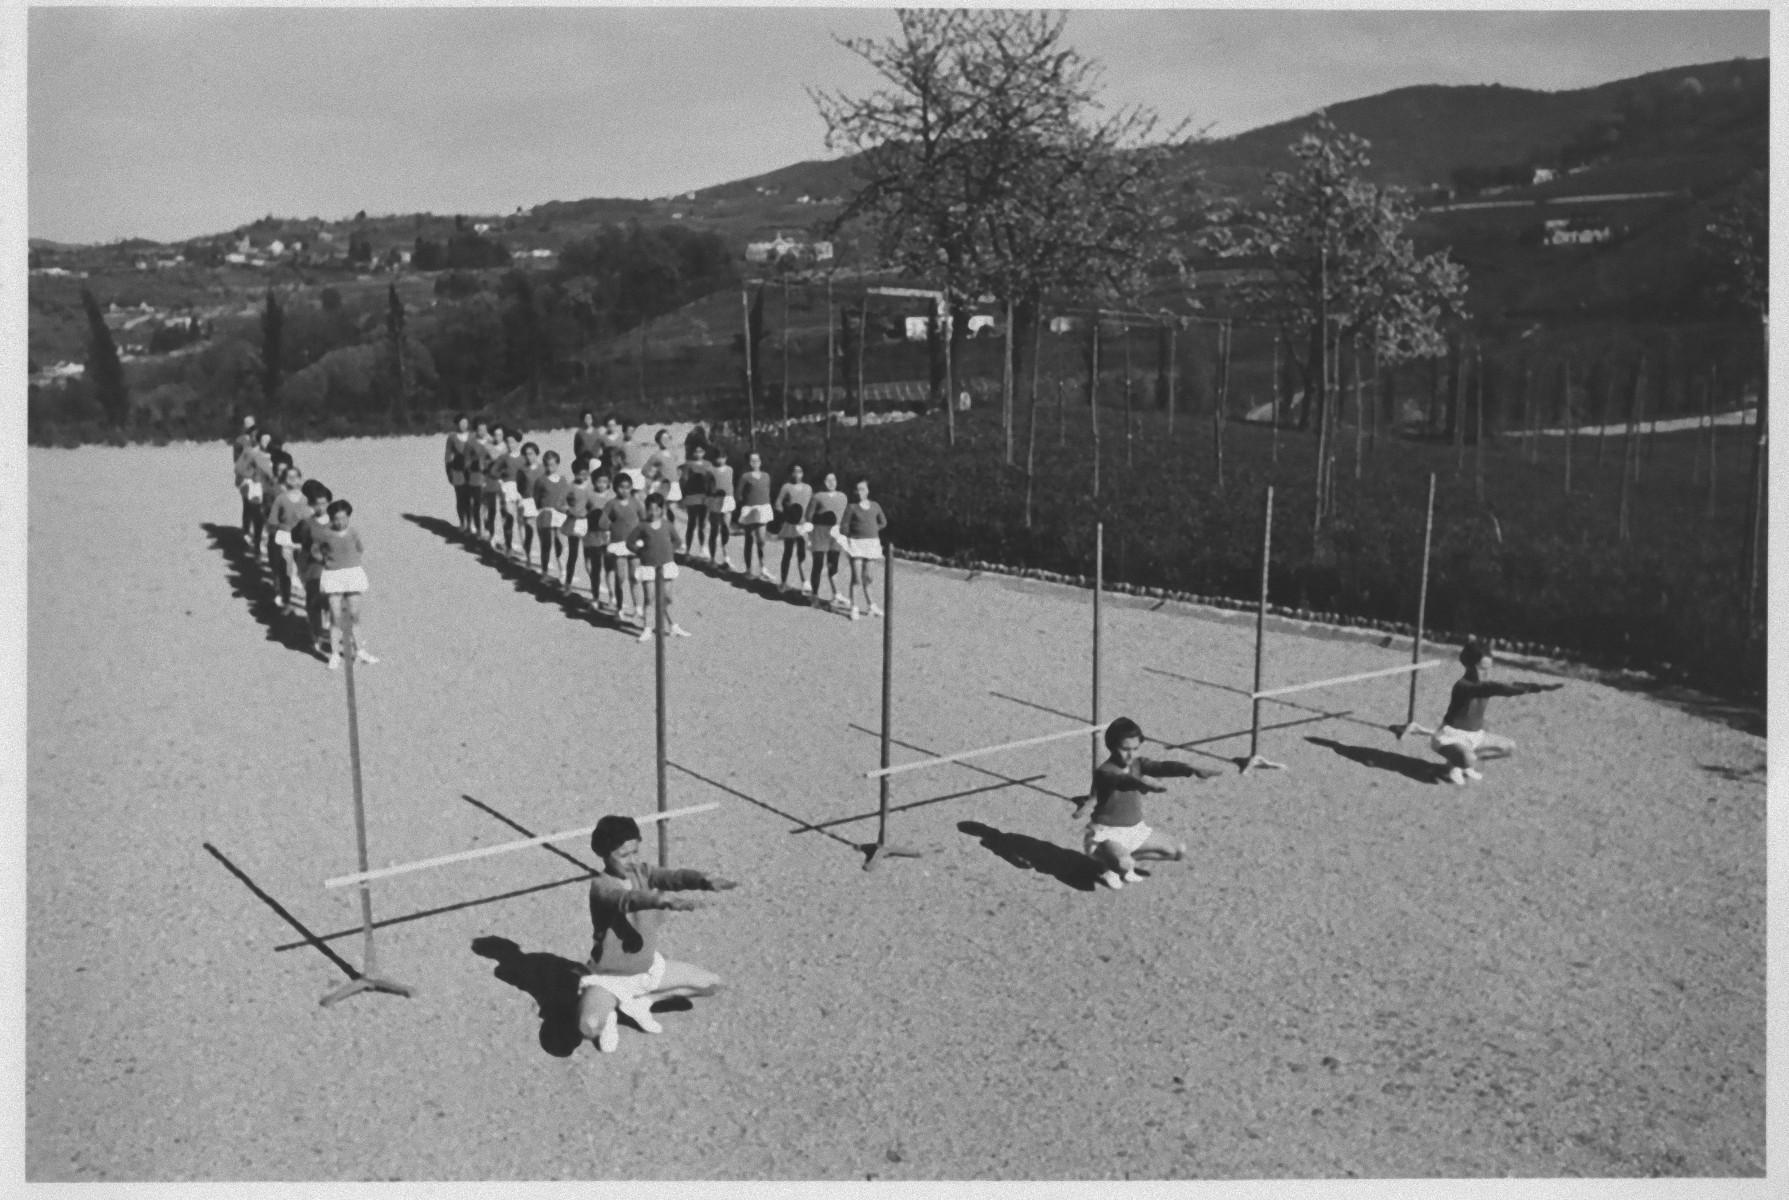 Outdoor-physische Ausbildung während des Fascismus in Italien - b/w Foto - 1930 c.a.